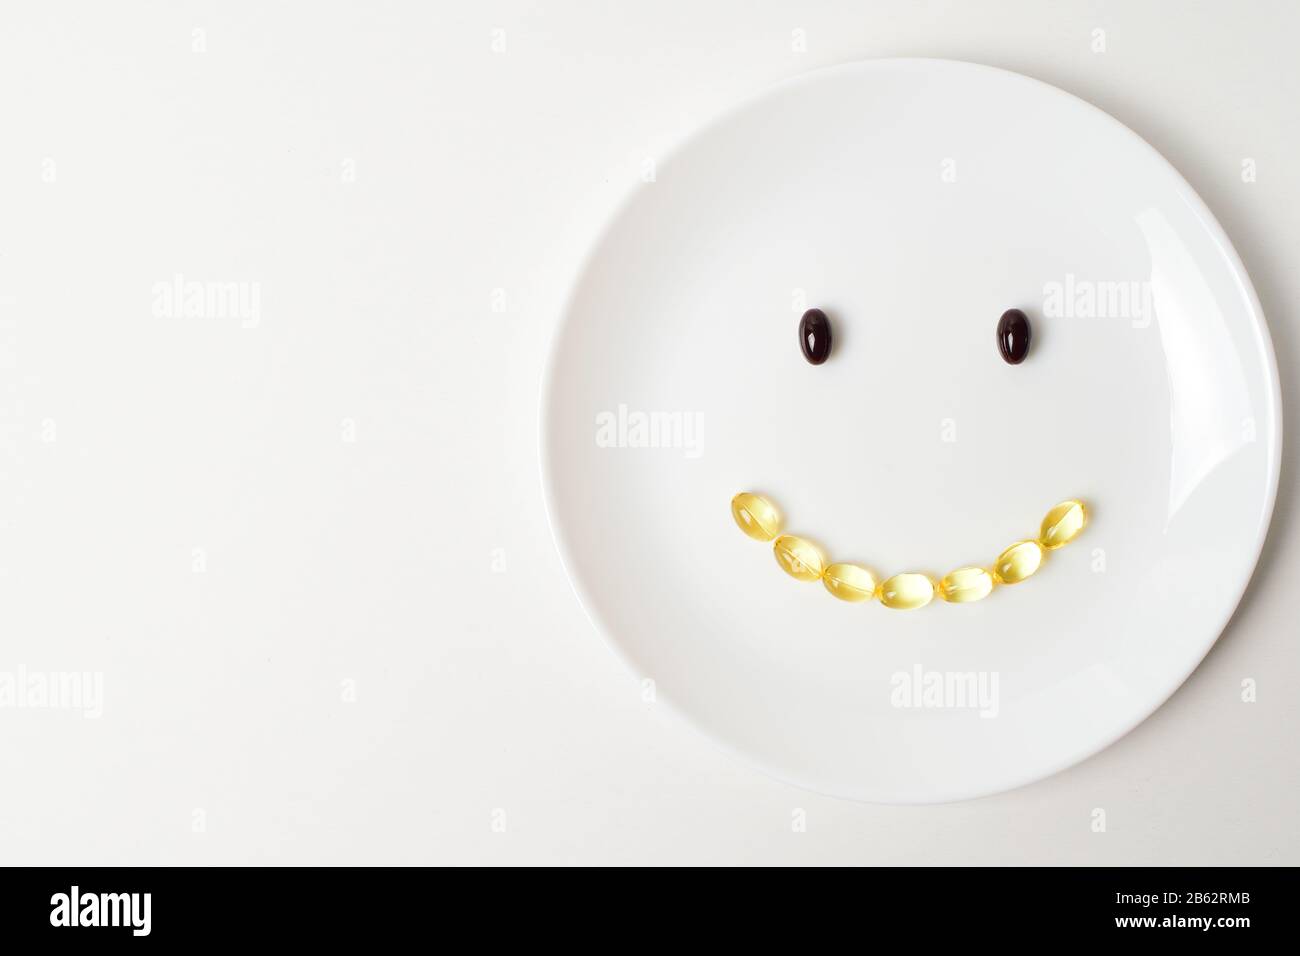 Astaxanthin und Fischöl bilden ein Lächeln auf einem weißen Teller. Kopieren Sie den Speicherplatz auf der linken Seite. Stockfoto